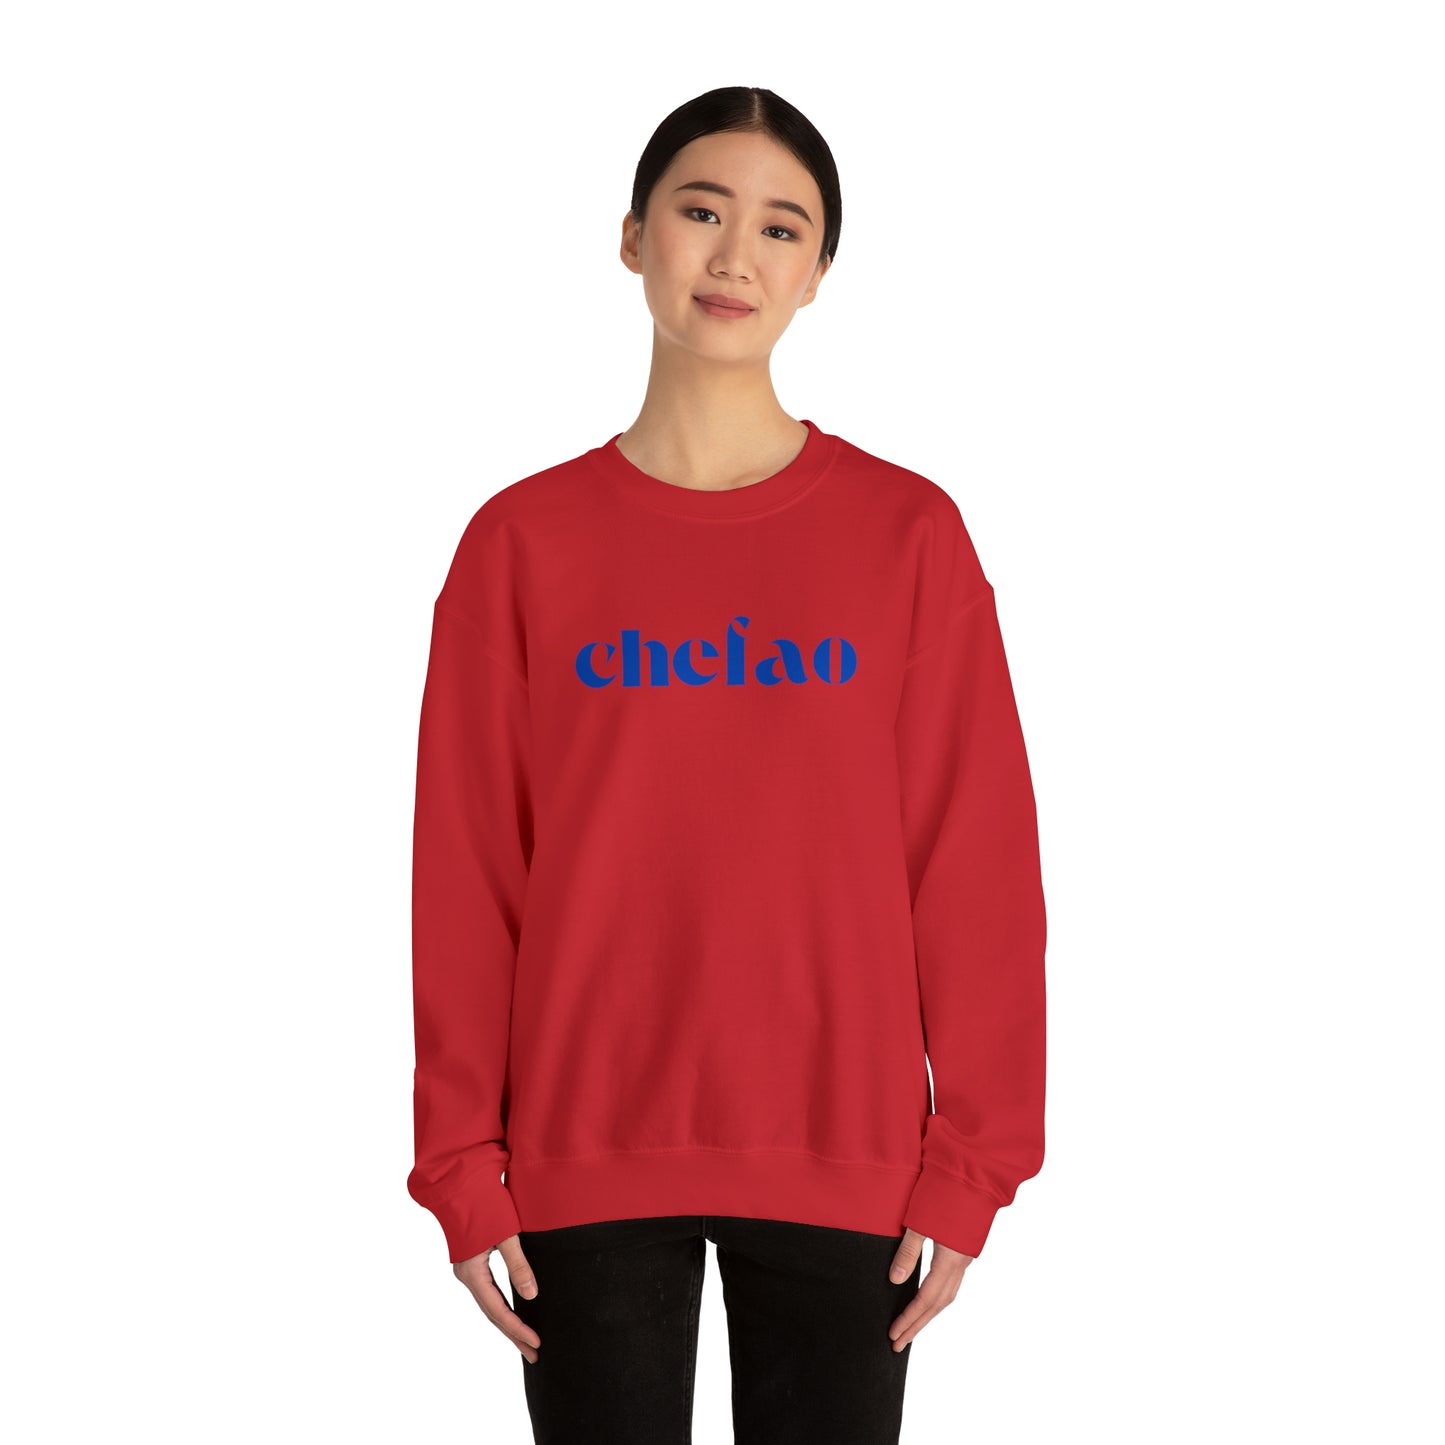 Chefao II, Unisex Heavy Blend Crewneck Sweatshirt